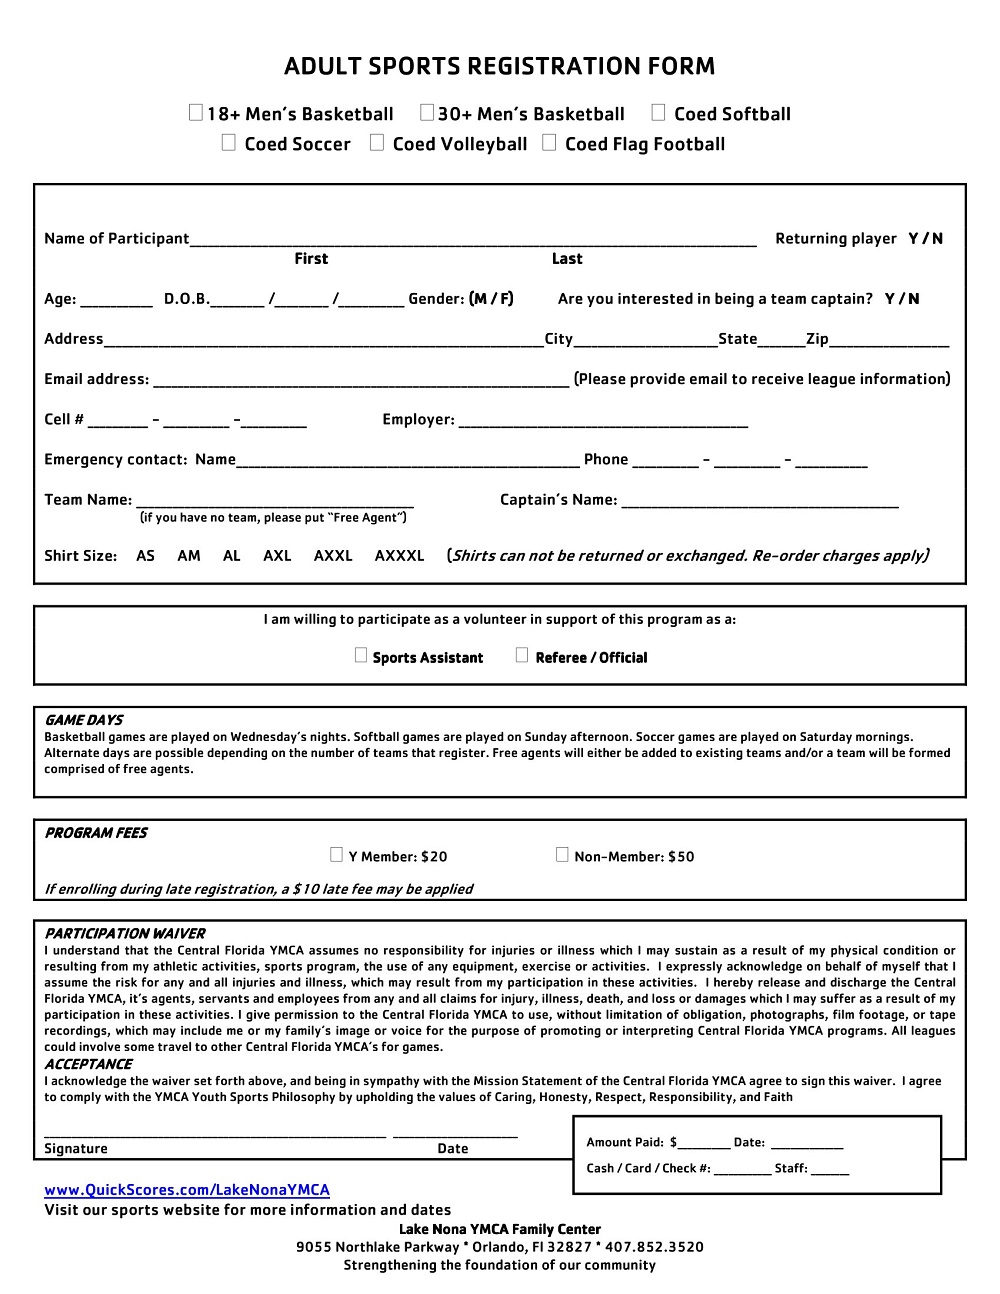 Adult Sports Registration Form